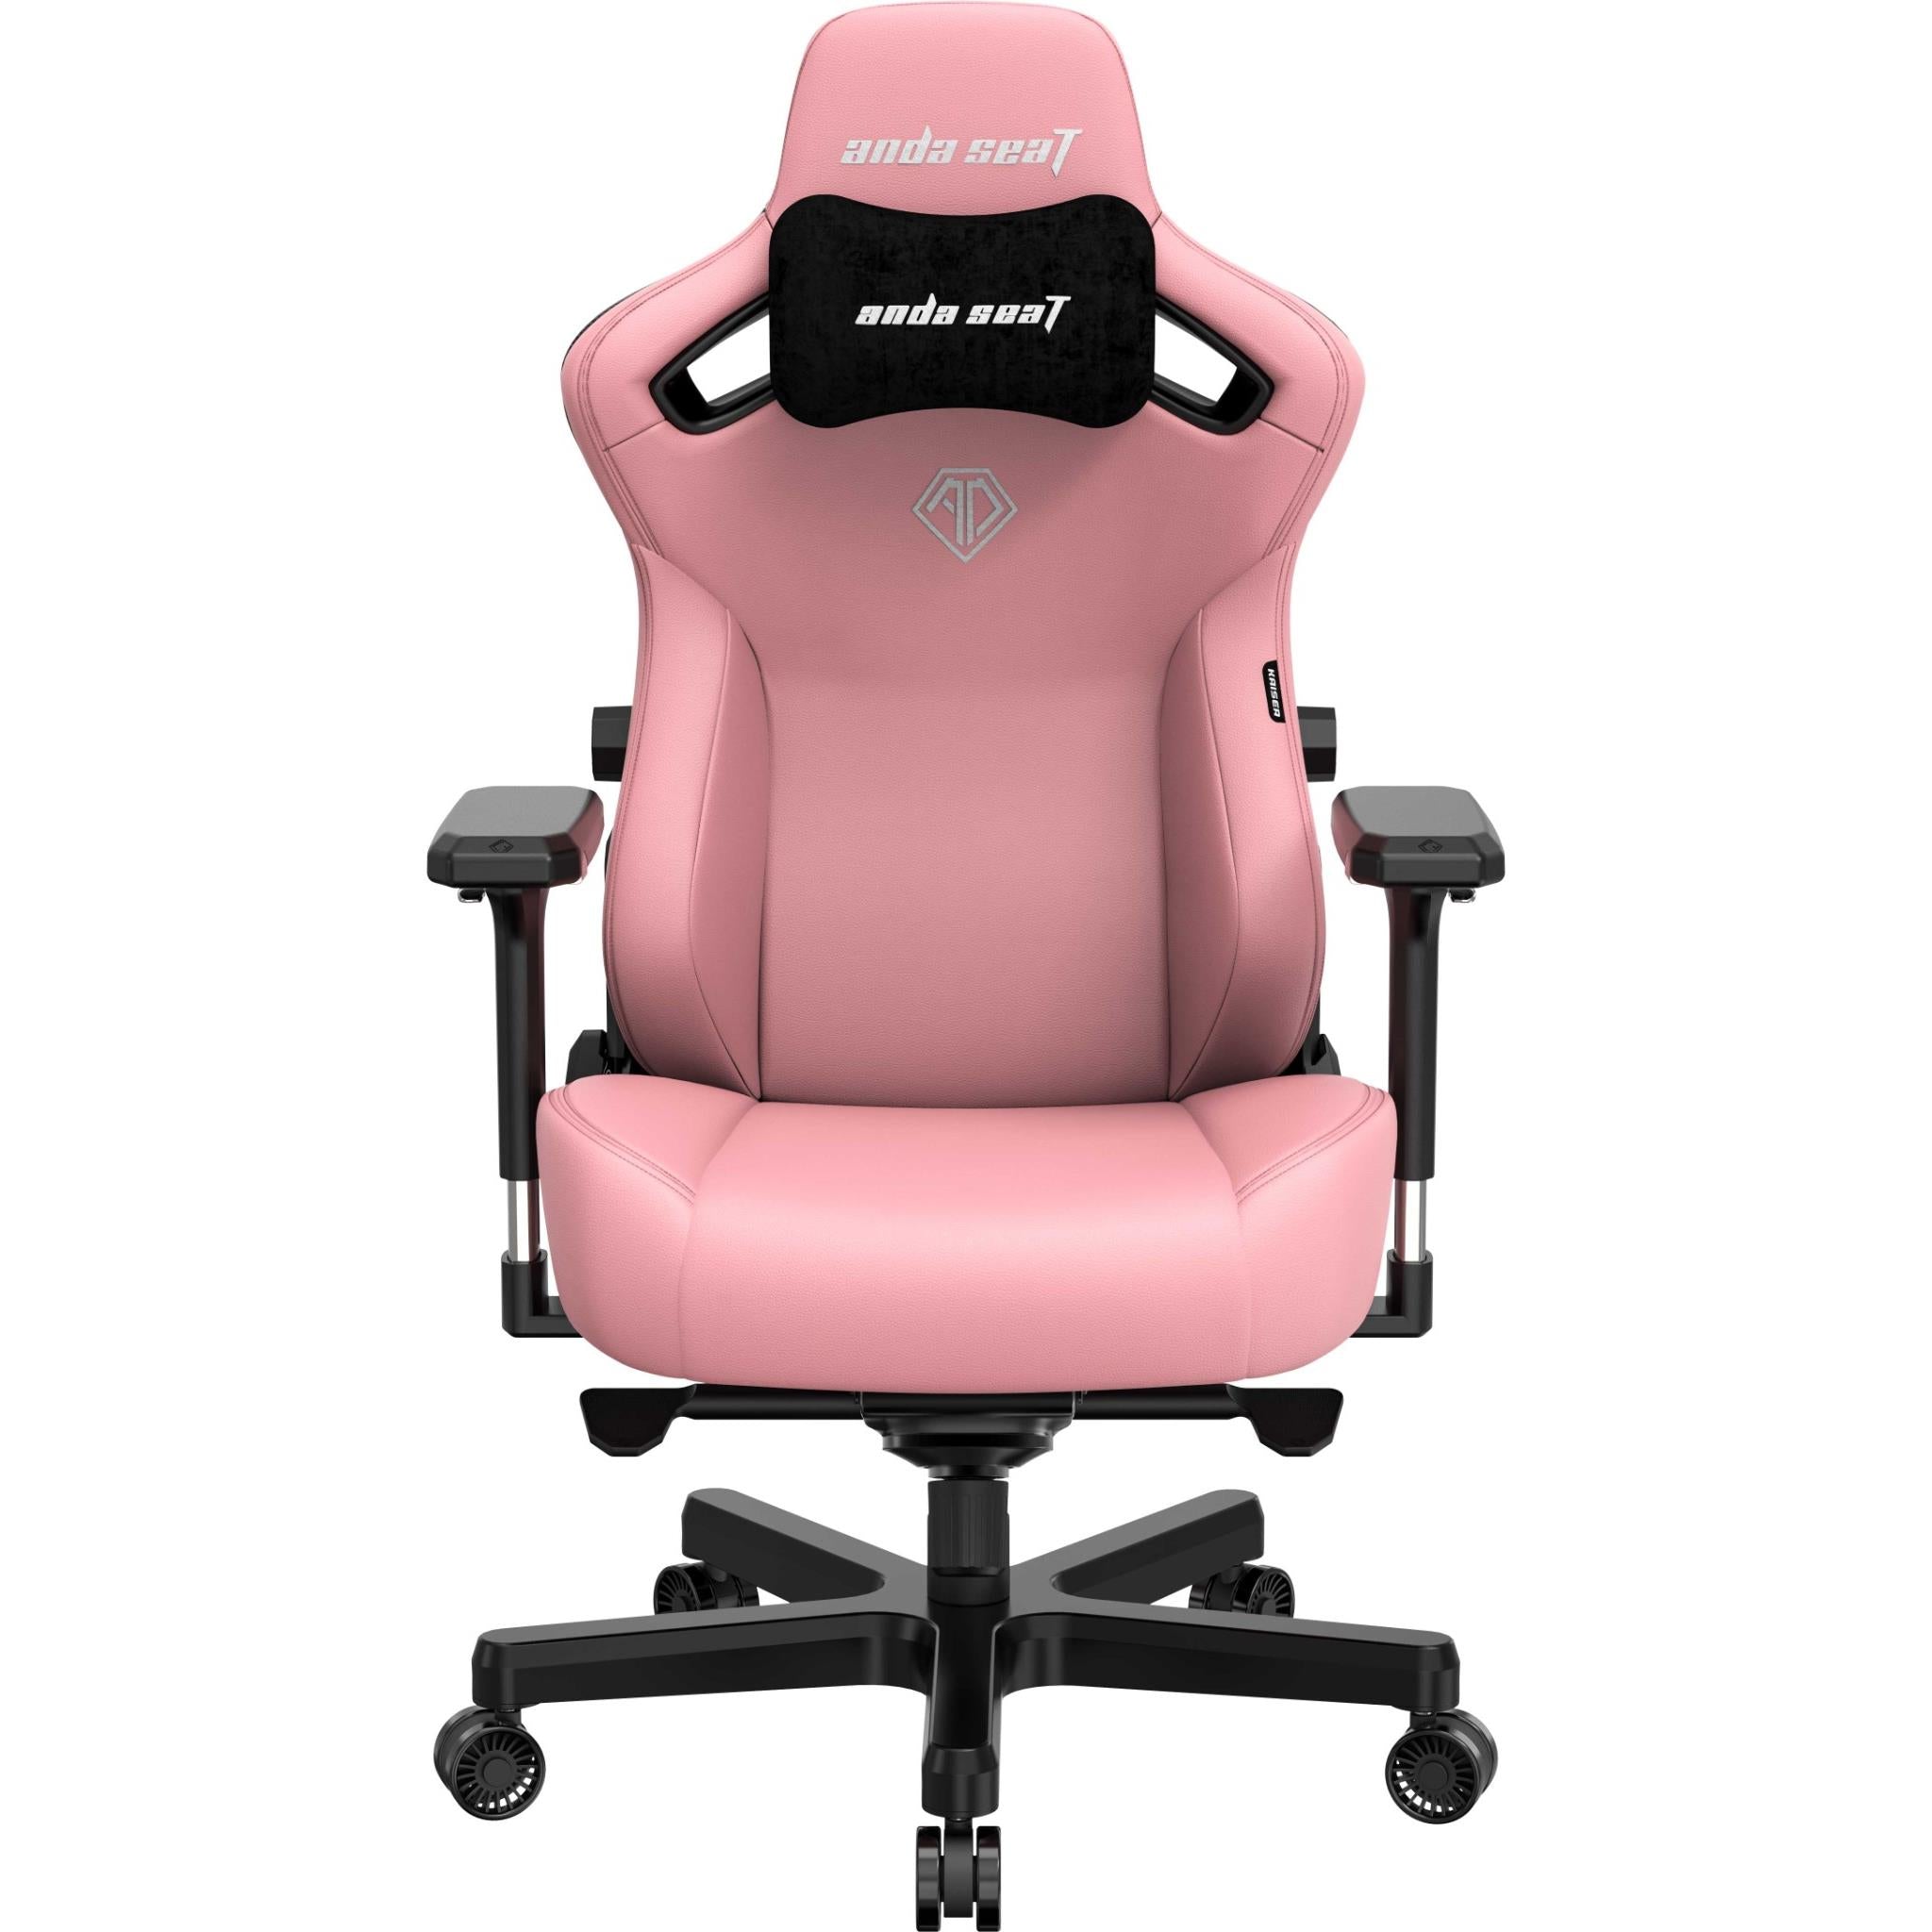 anda seat kaiser 3 series premium gaming chair pink (large)